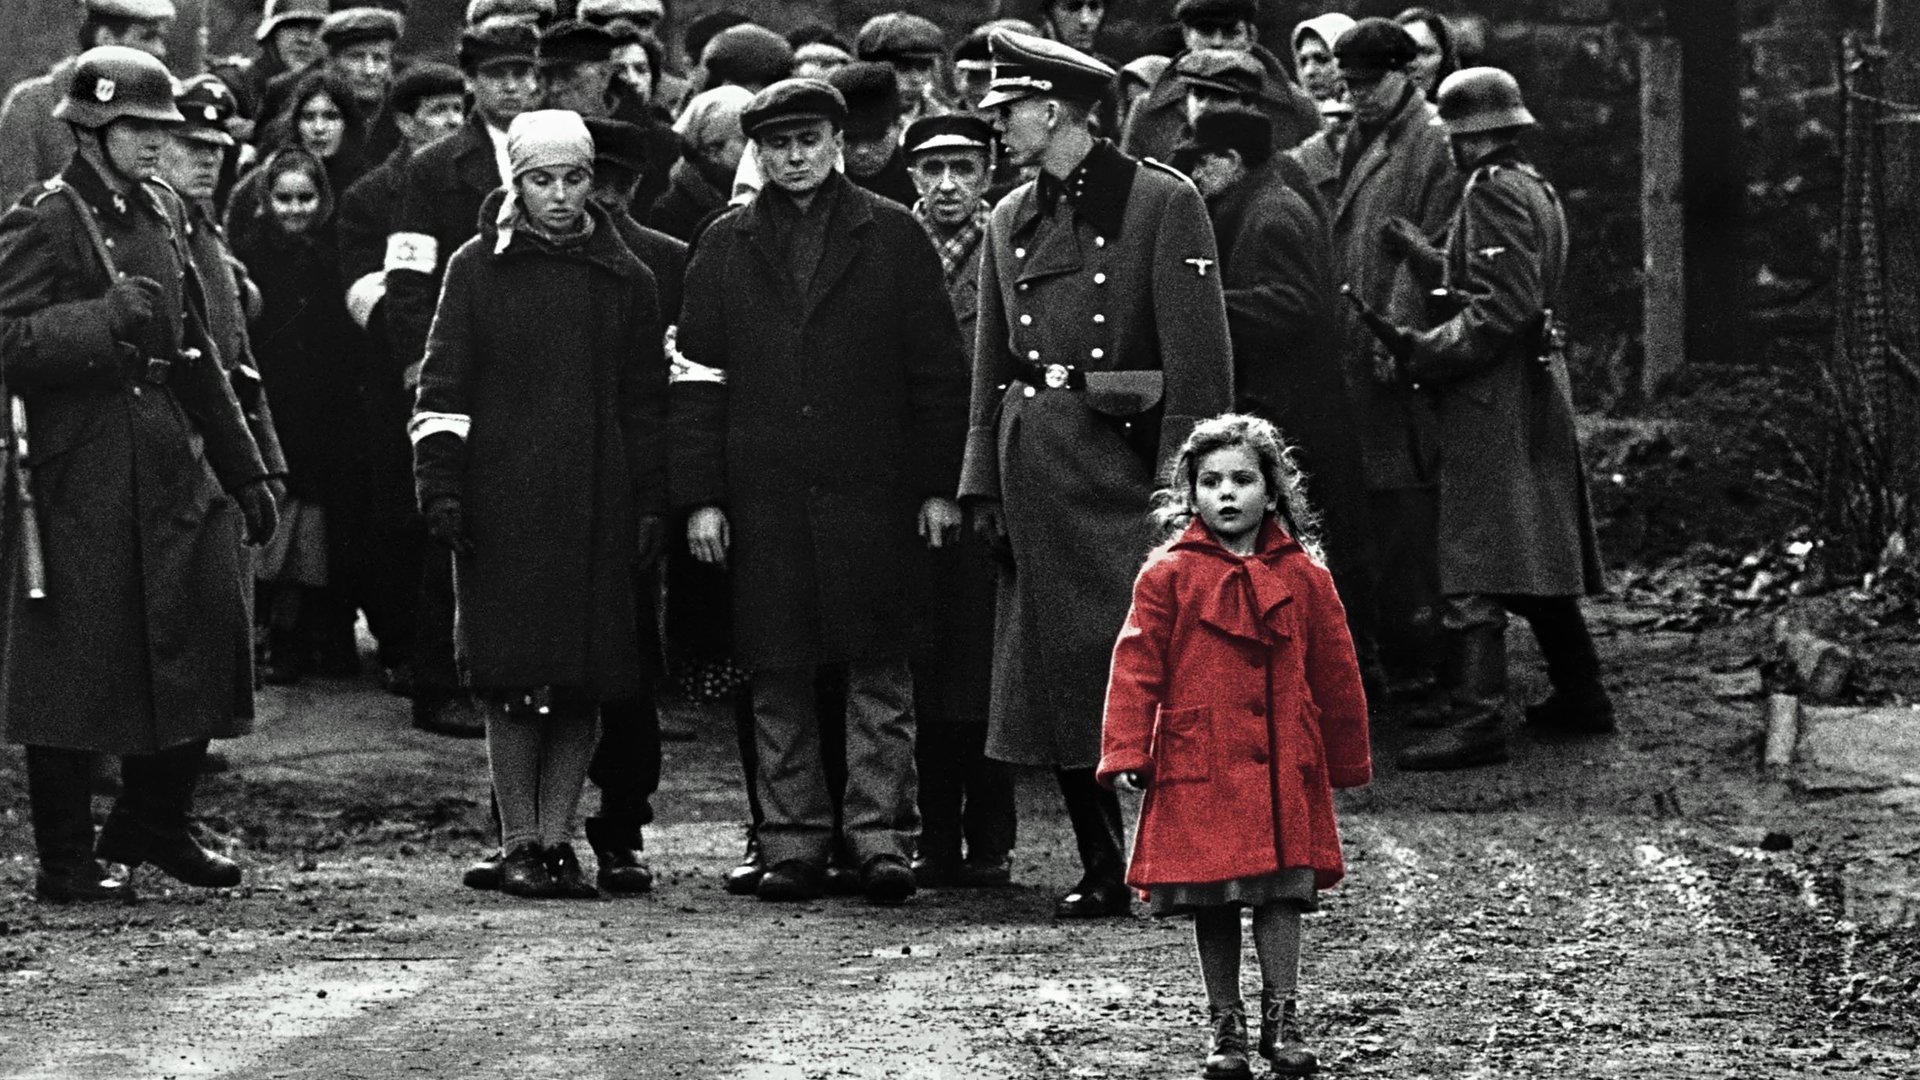 La Liste de Schindler : 30 ans après, la petite fille au manteau rouge aide en Ukraine